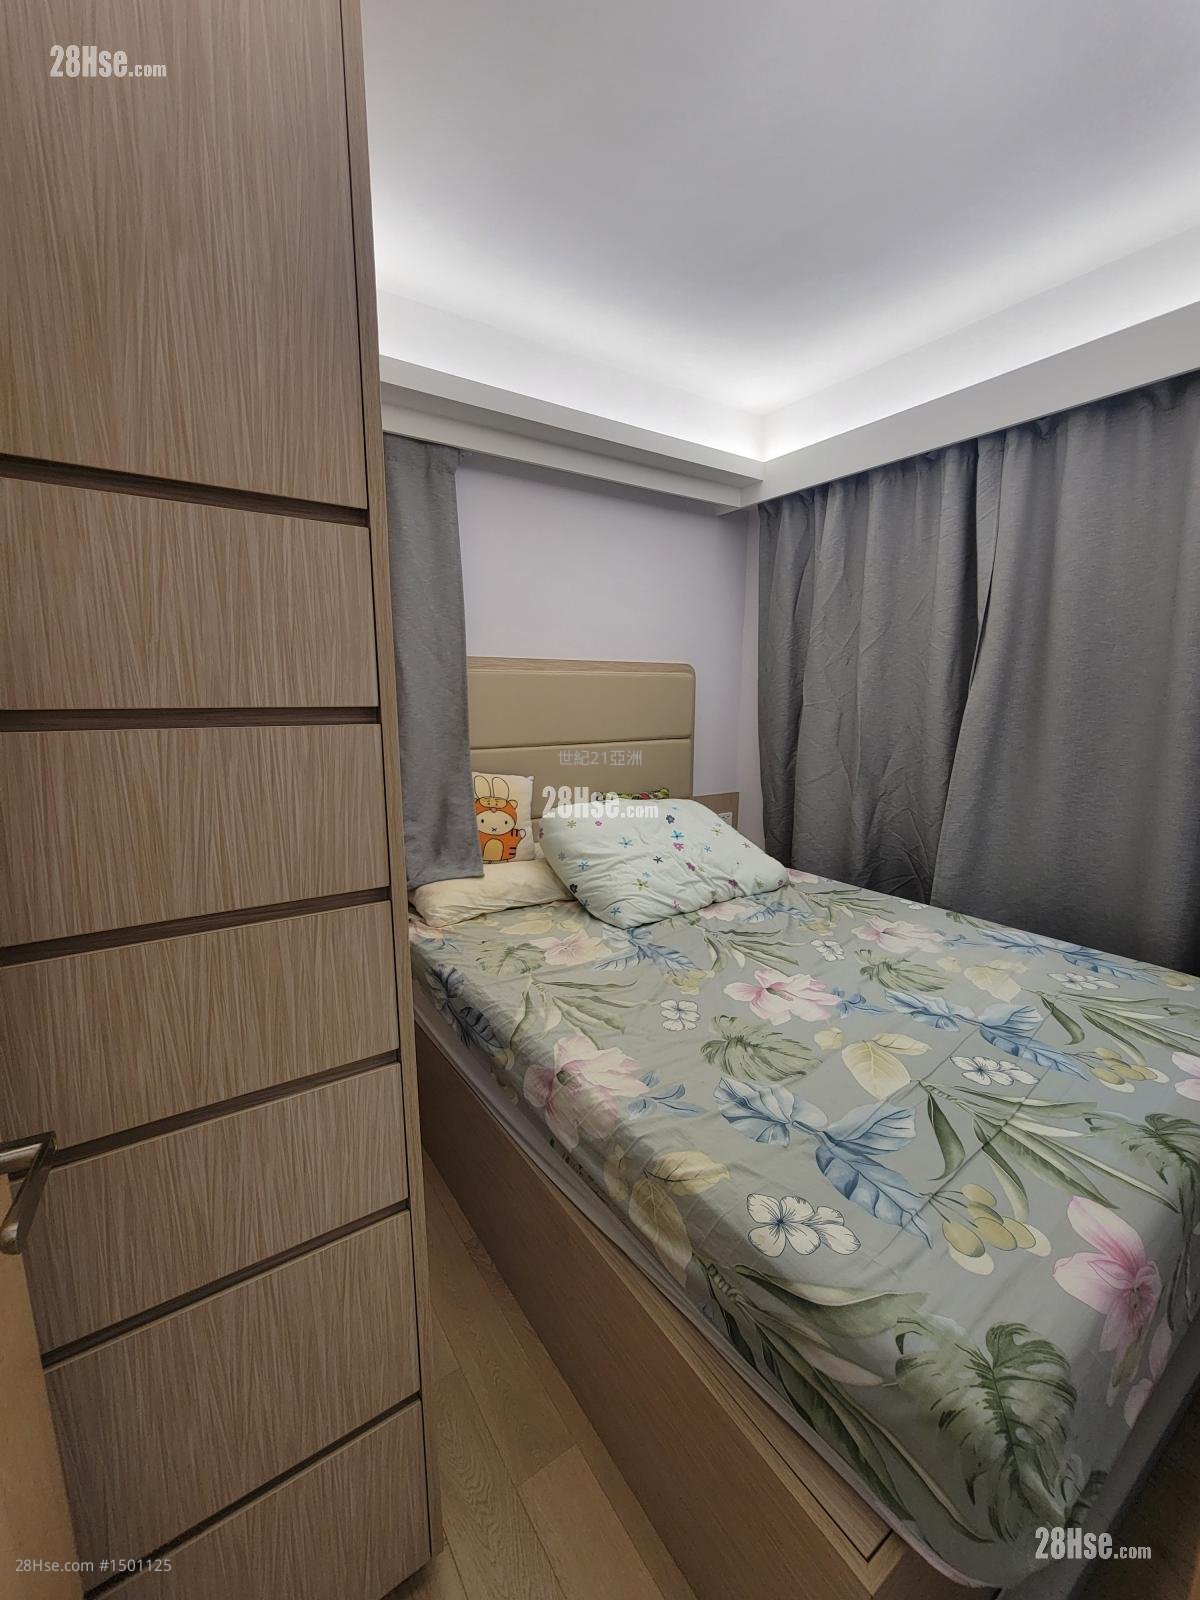 Yen Ying Building Rental 1 bedrooms , 1 bathrooms 355 ft²